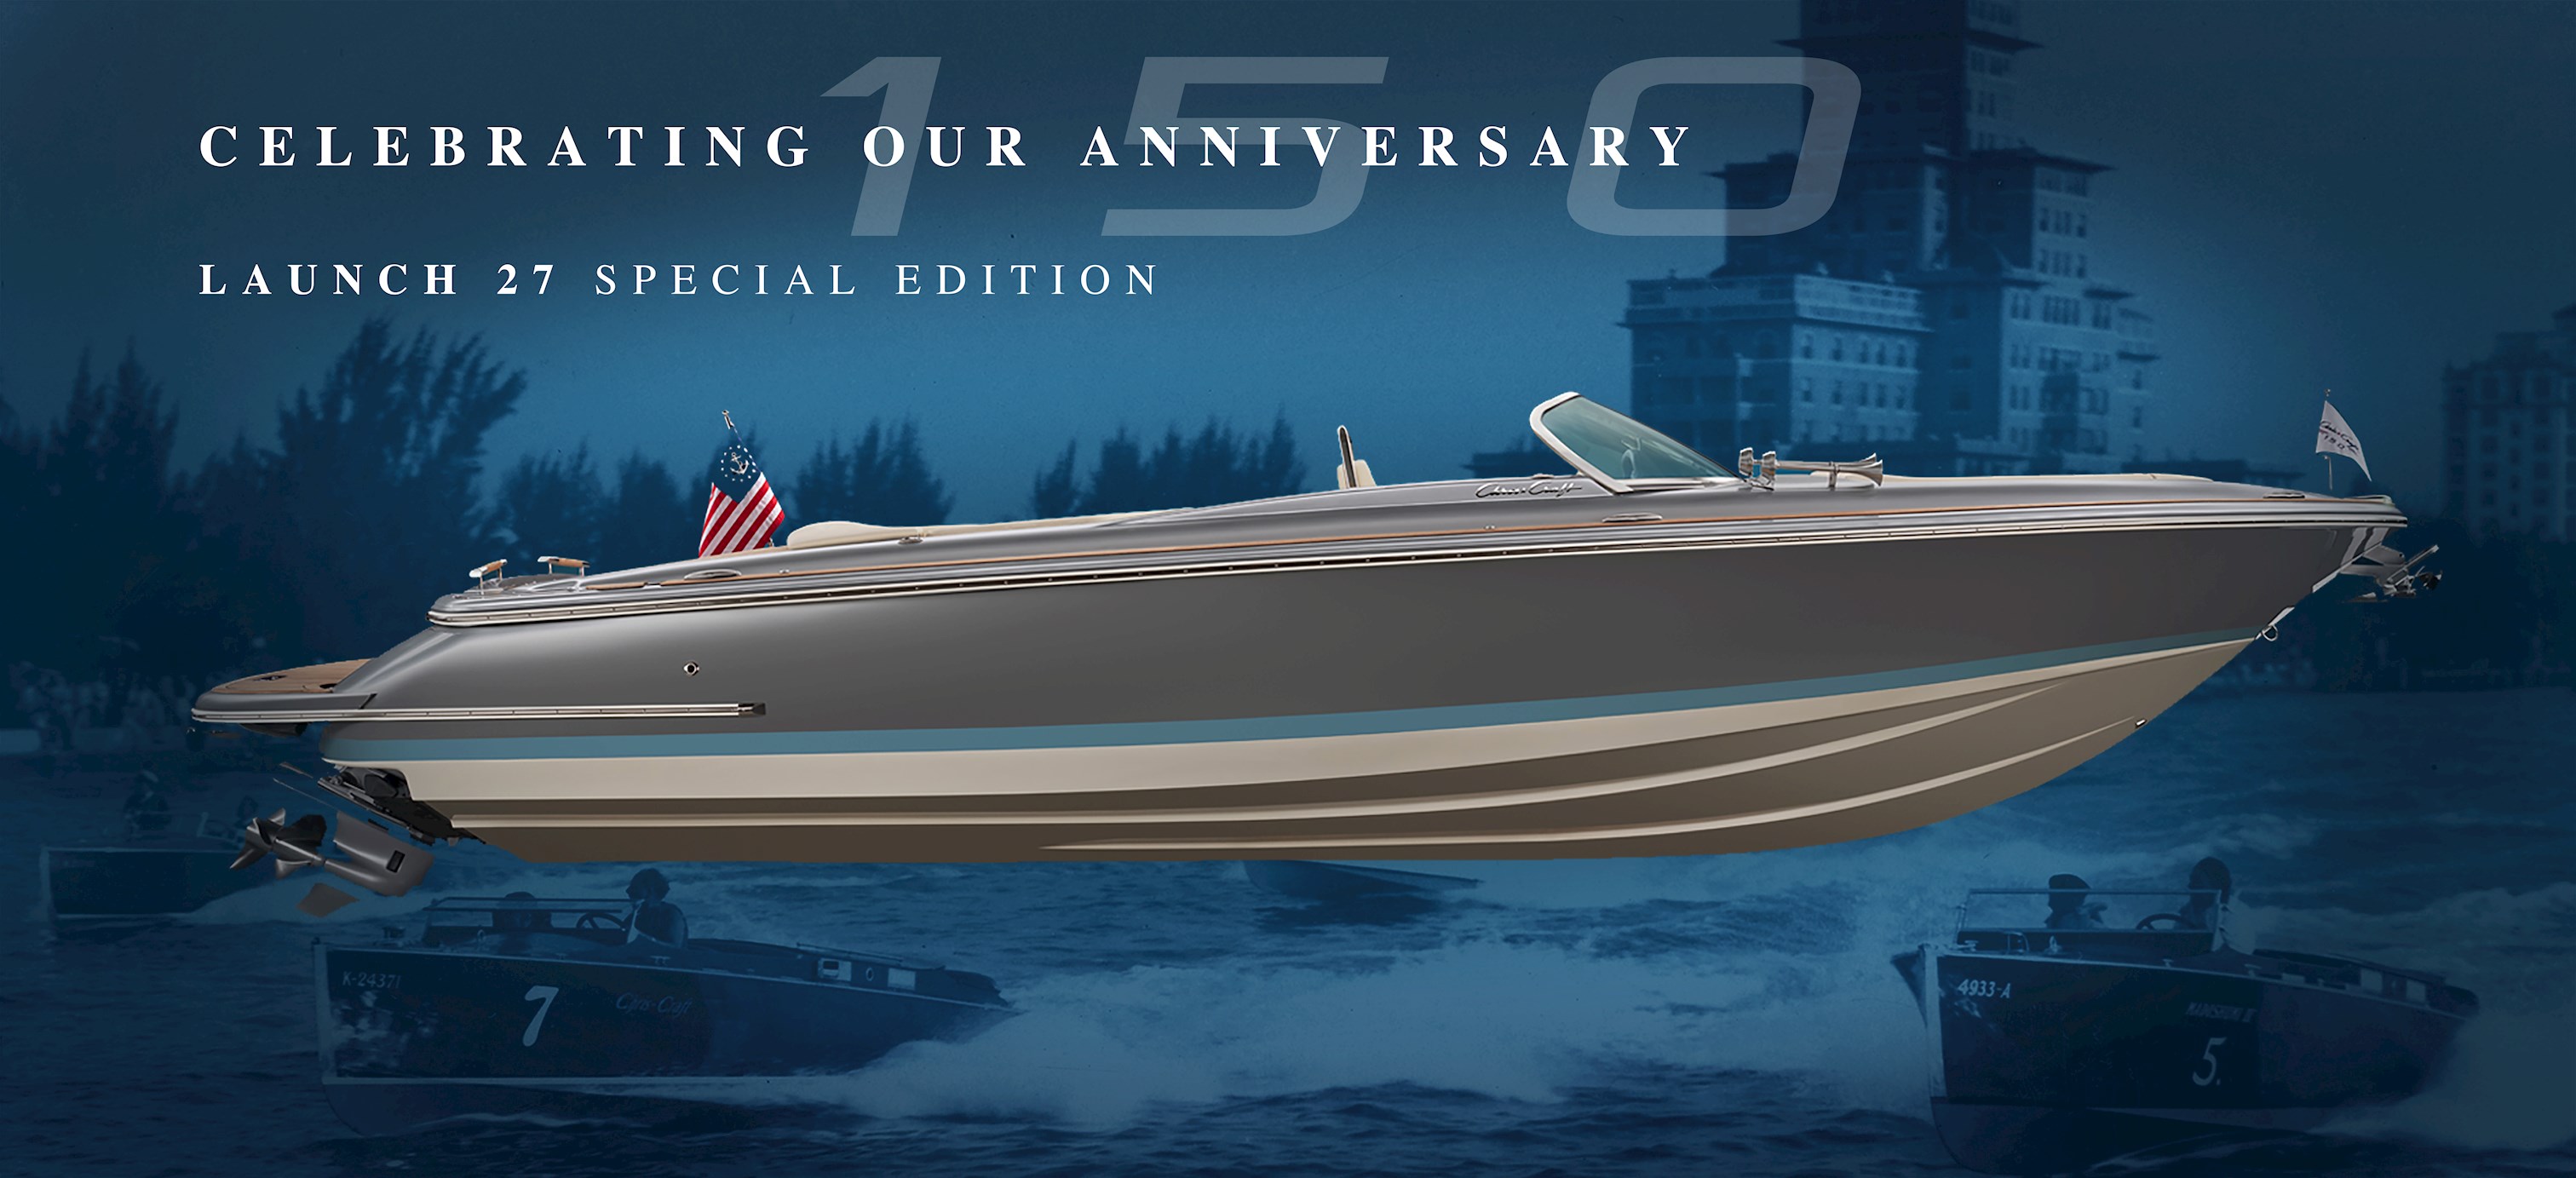 Chris-Craft celebra su 150 aniversario presentando la edición especial Launch 27